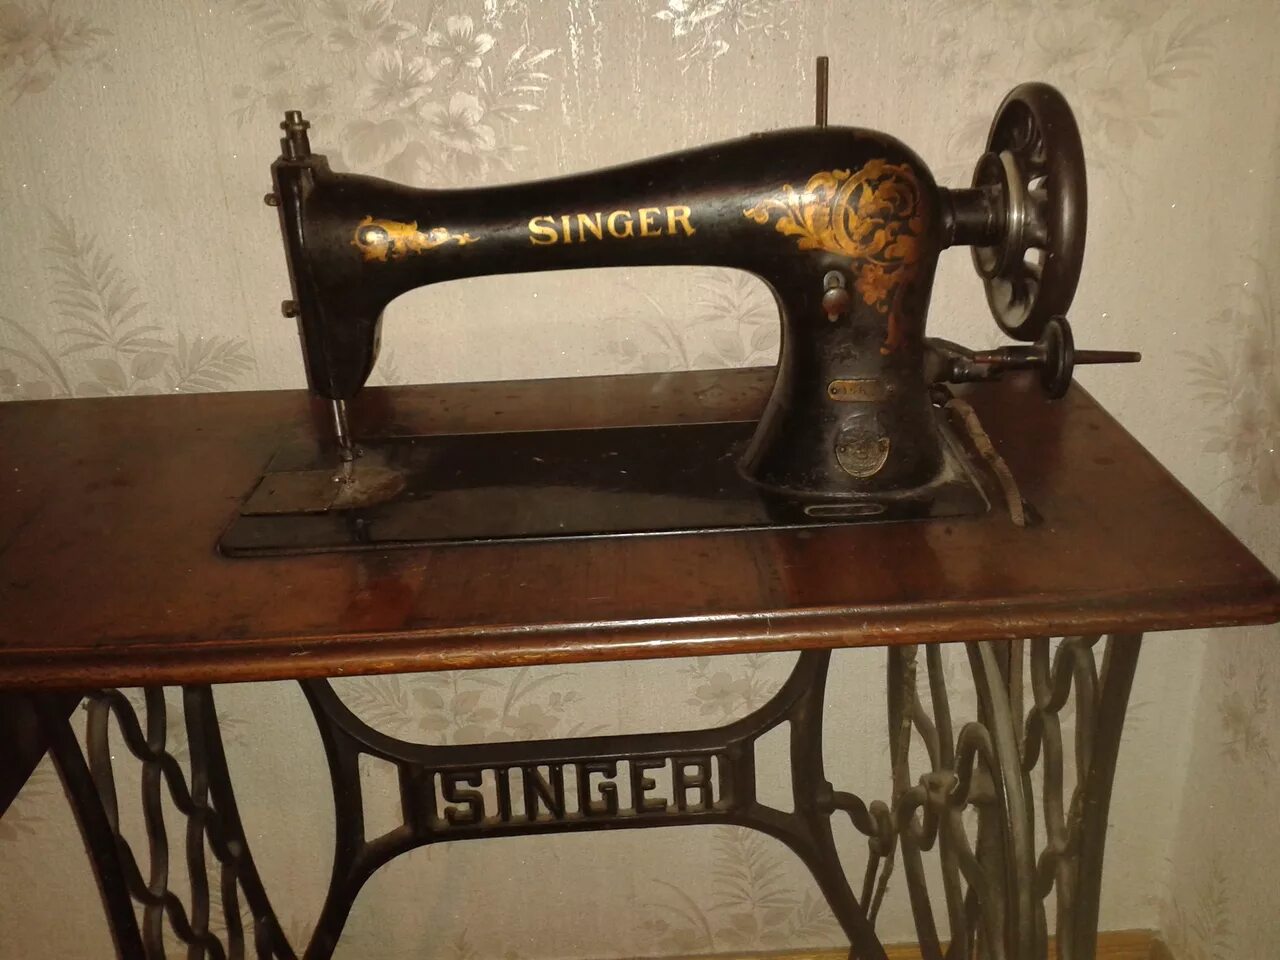 Швейная машинка Зингер s010l. Швейная машинка (Zinger super 2001). Швейная машинка Зингер 1902 года. Старинная швейная машинка Зингер. Швейная машинка зингер видео